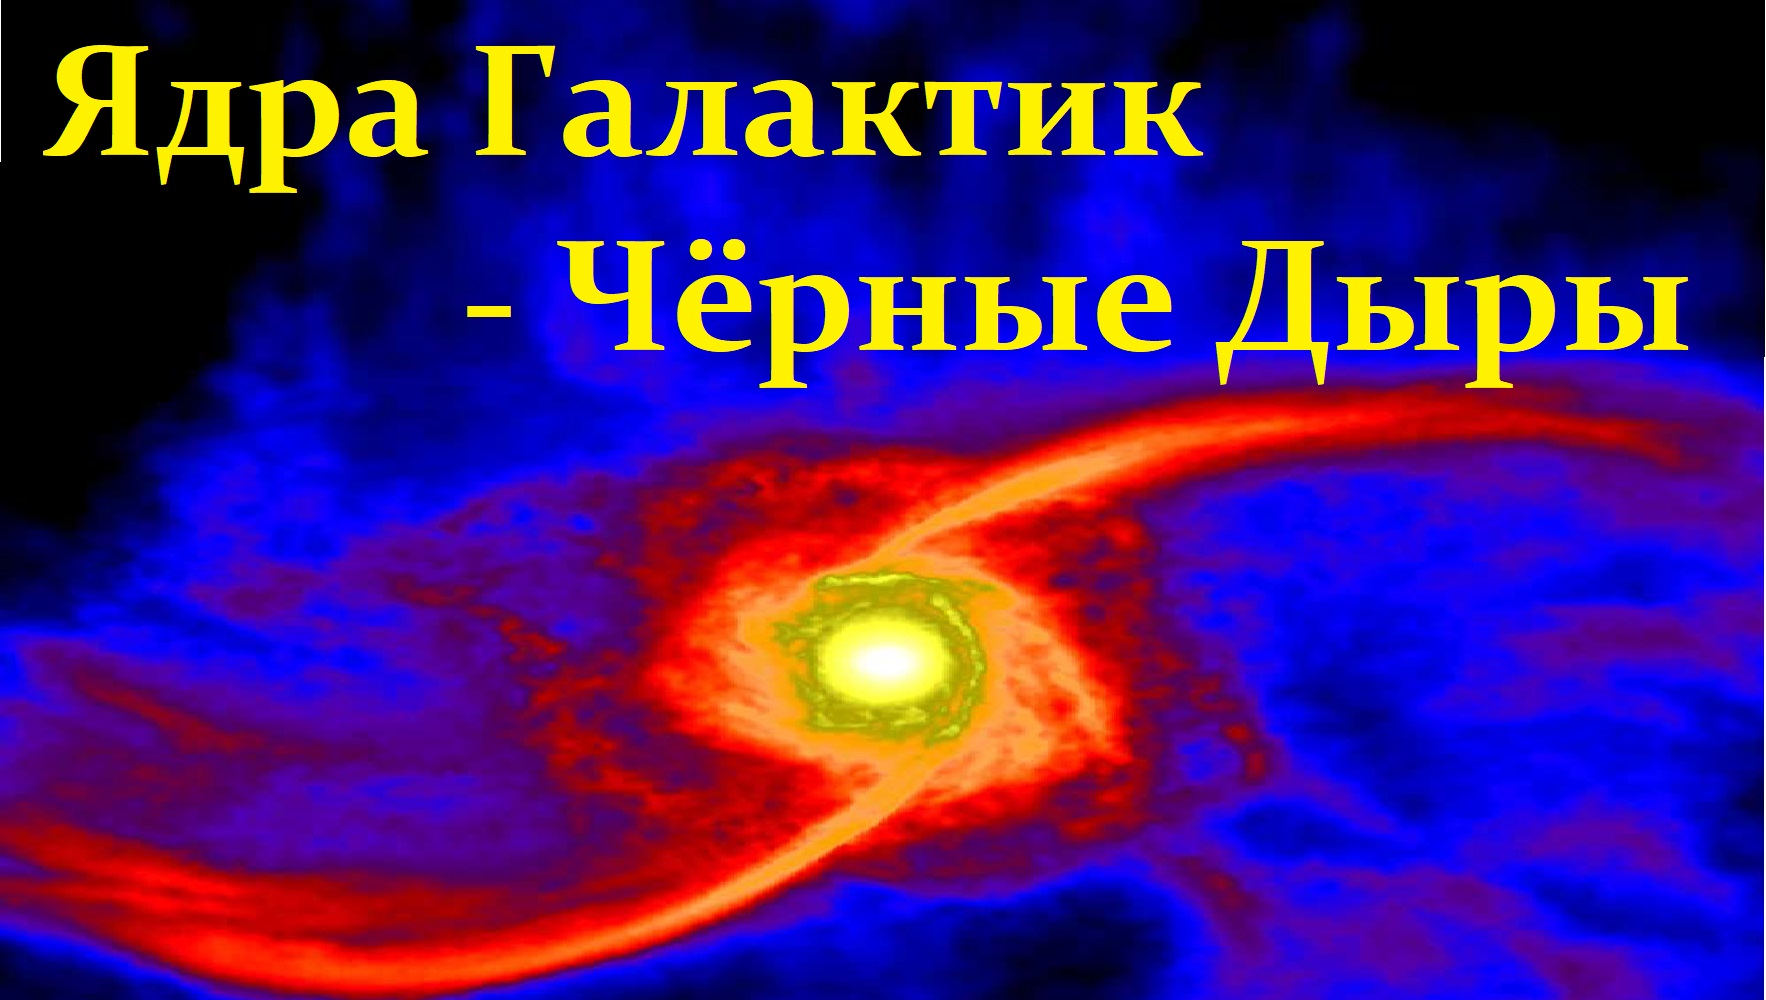 ✨ Засов А. Космос: Активные Ядра Галактик - Чёрные Дыры. Video ReMastered.